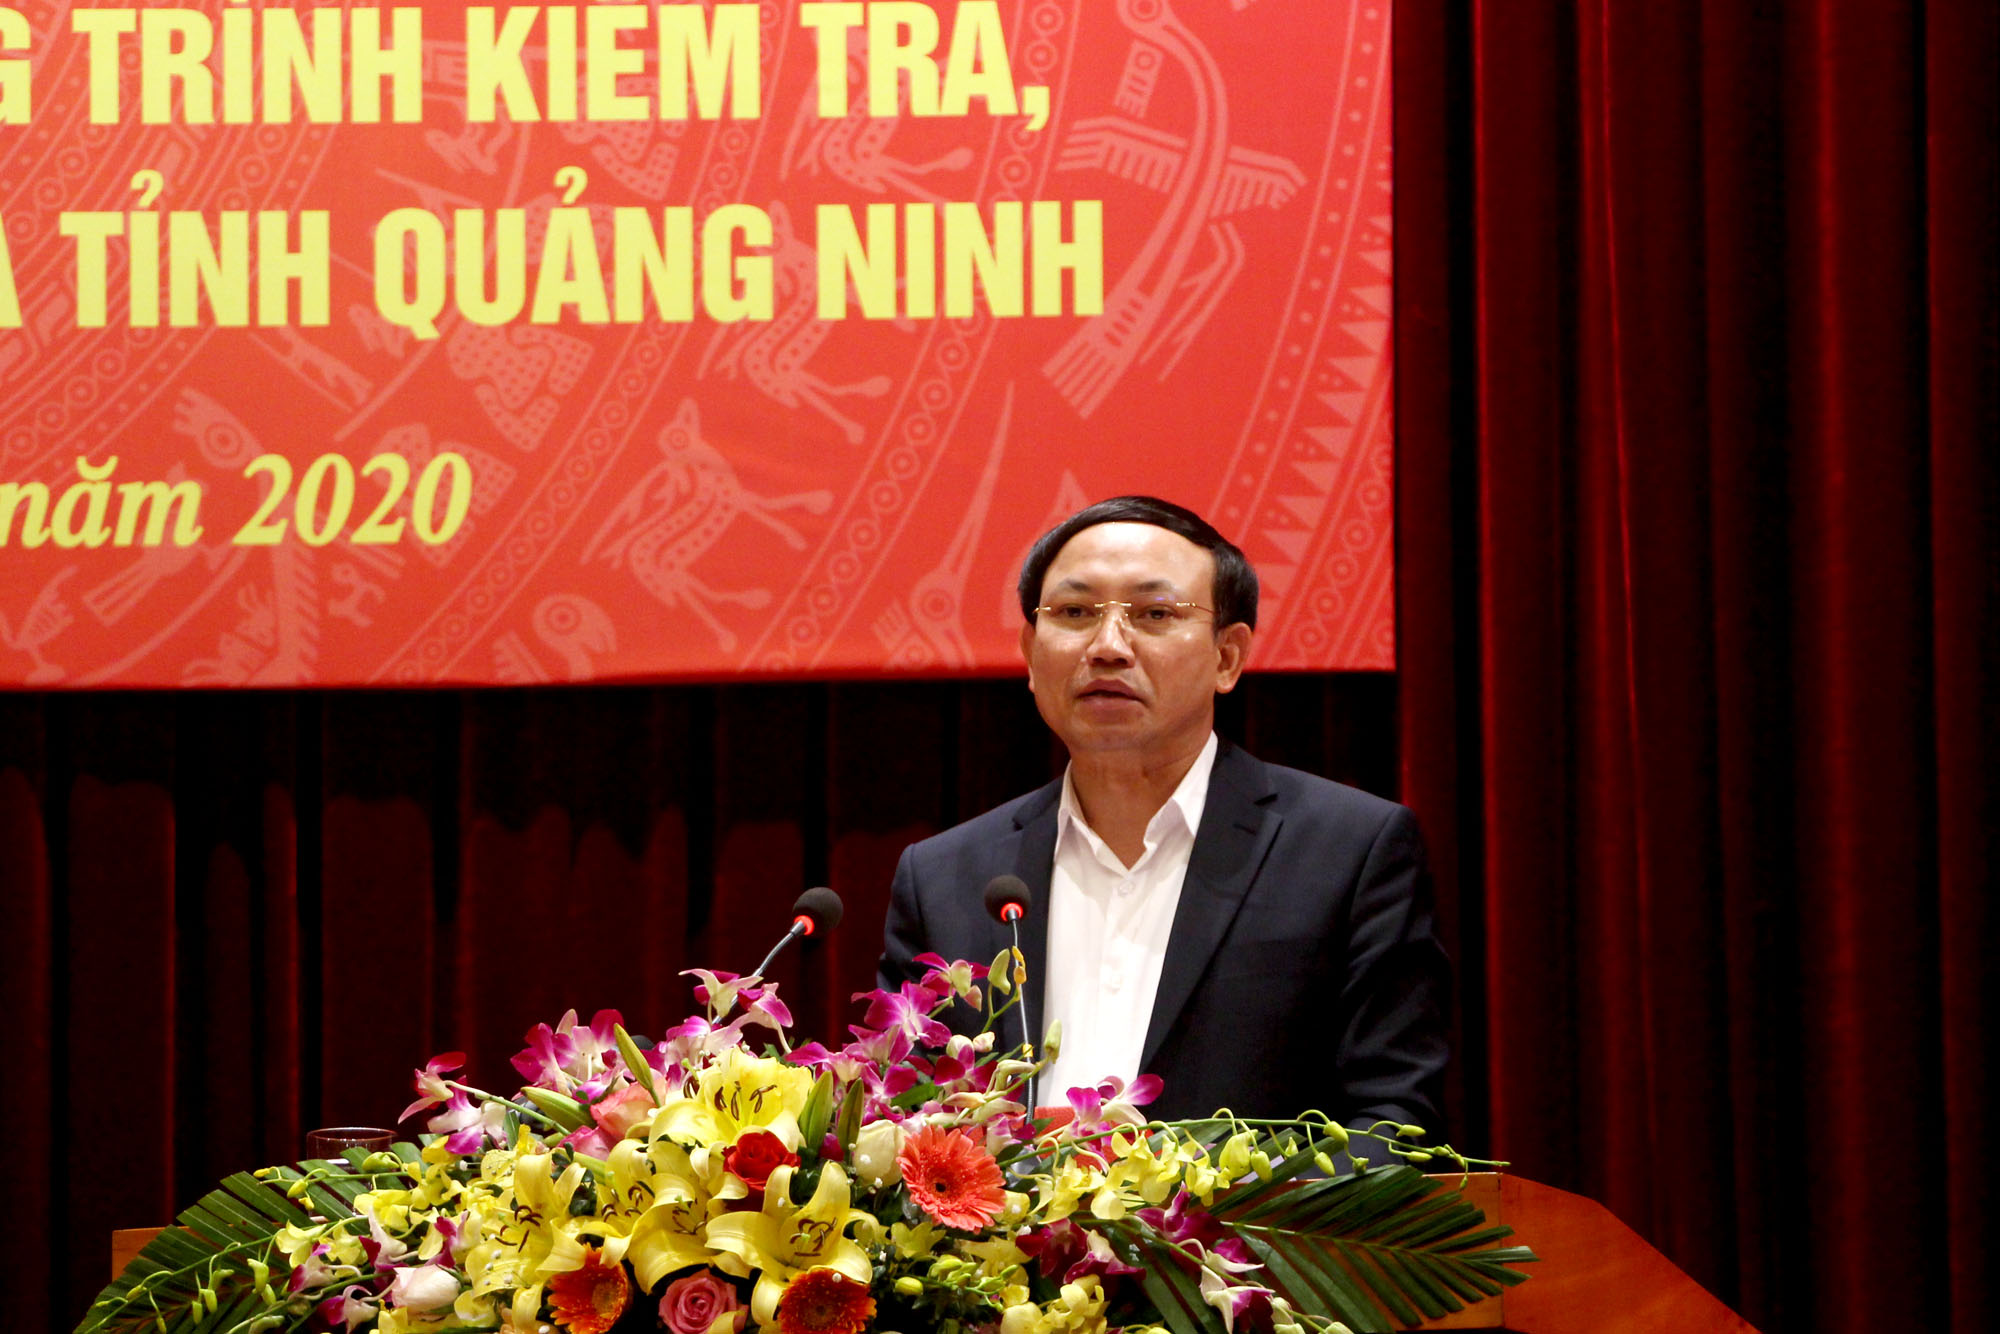 Đồng chí Nguyễn Xuân Ký, Bí thư Tỉnh ủy, Chủ tịch HĐND tỉnh, phát biểu chỉ đạo tại hội nghị,